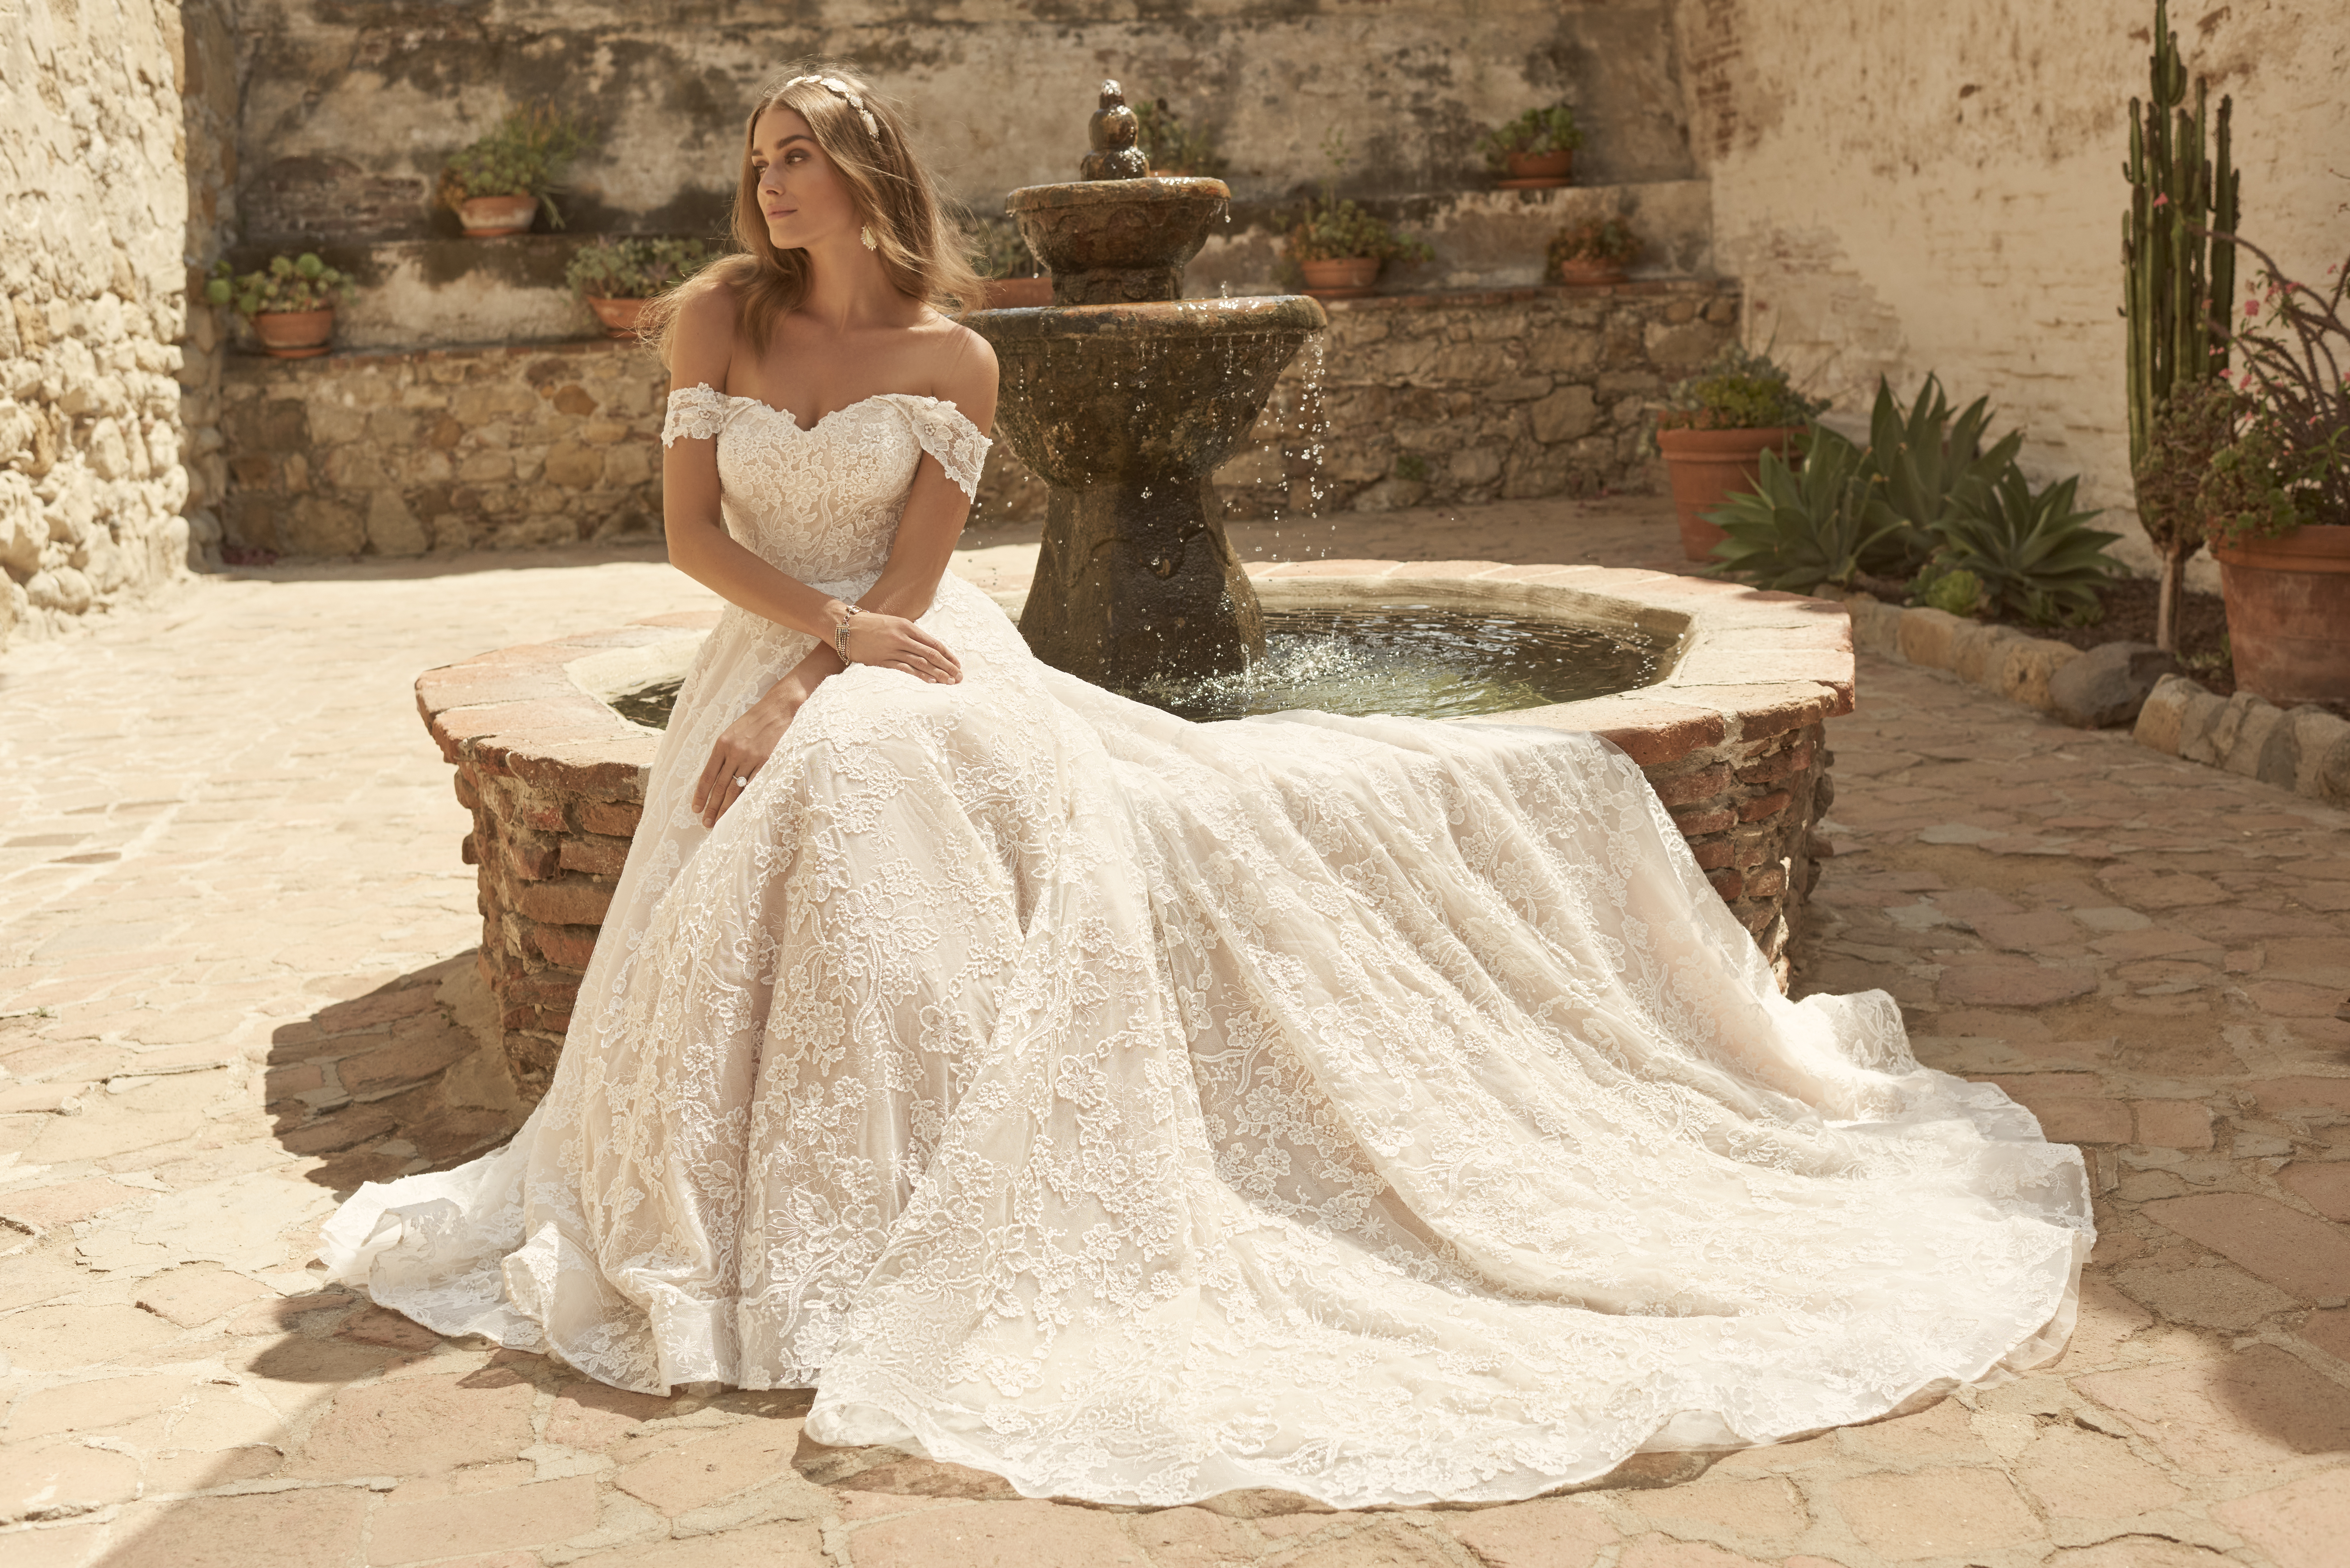 15 Ethereal FlowerInspired Wedding Dresses For Your White Garden Wedding   Praise Wedding